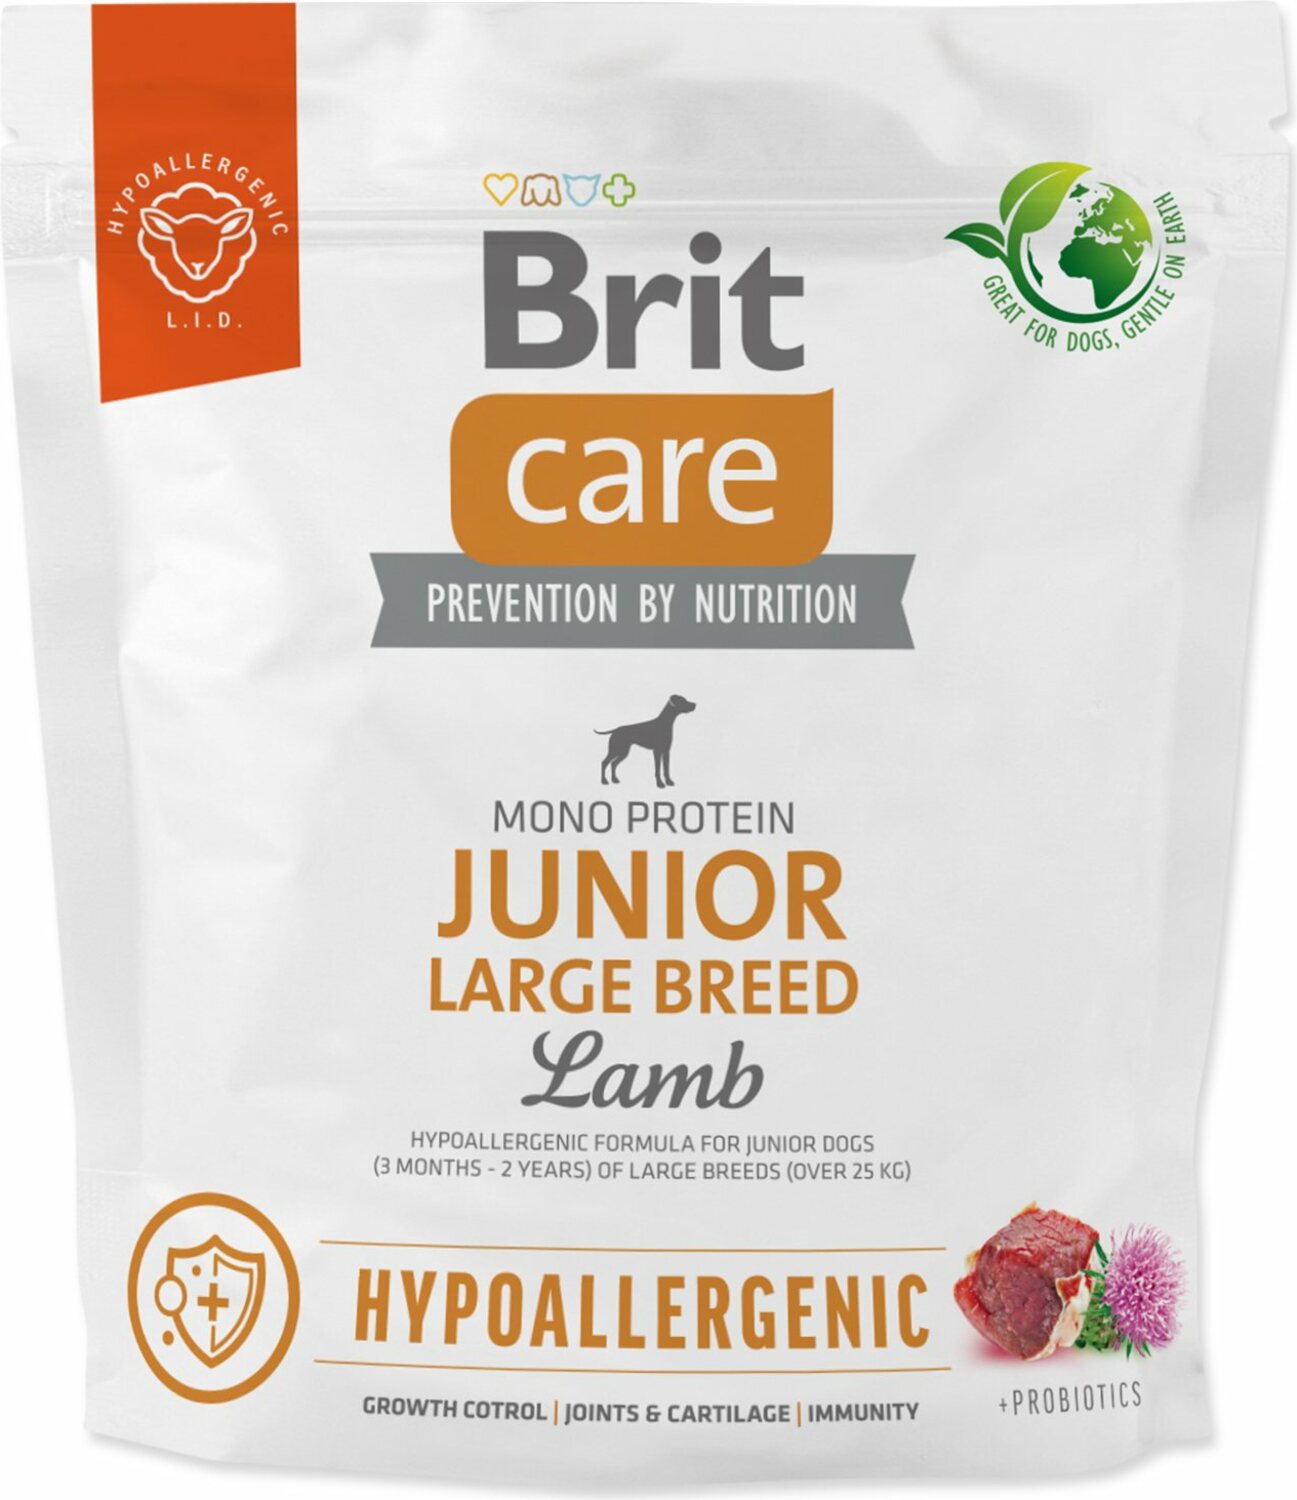 Krmivo Brit Care Dog Hypoallergenic Junior Large Breed Lamb 1kg